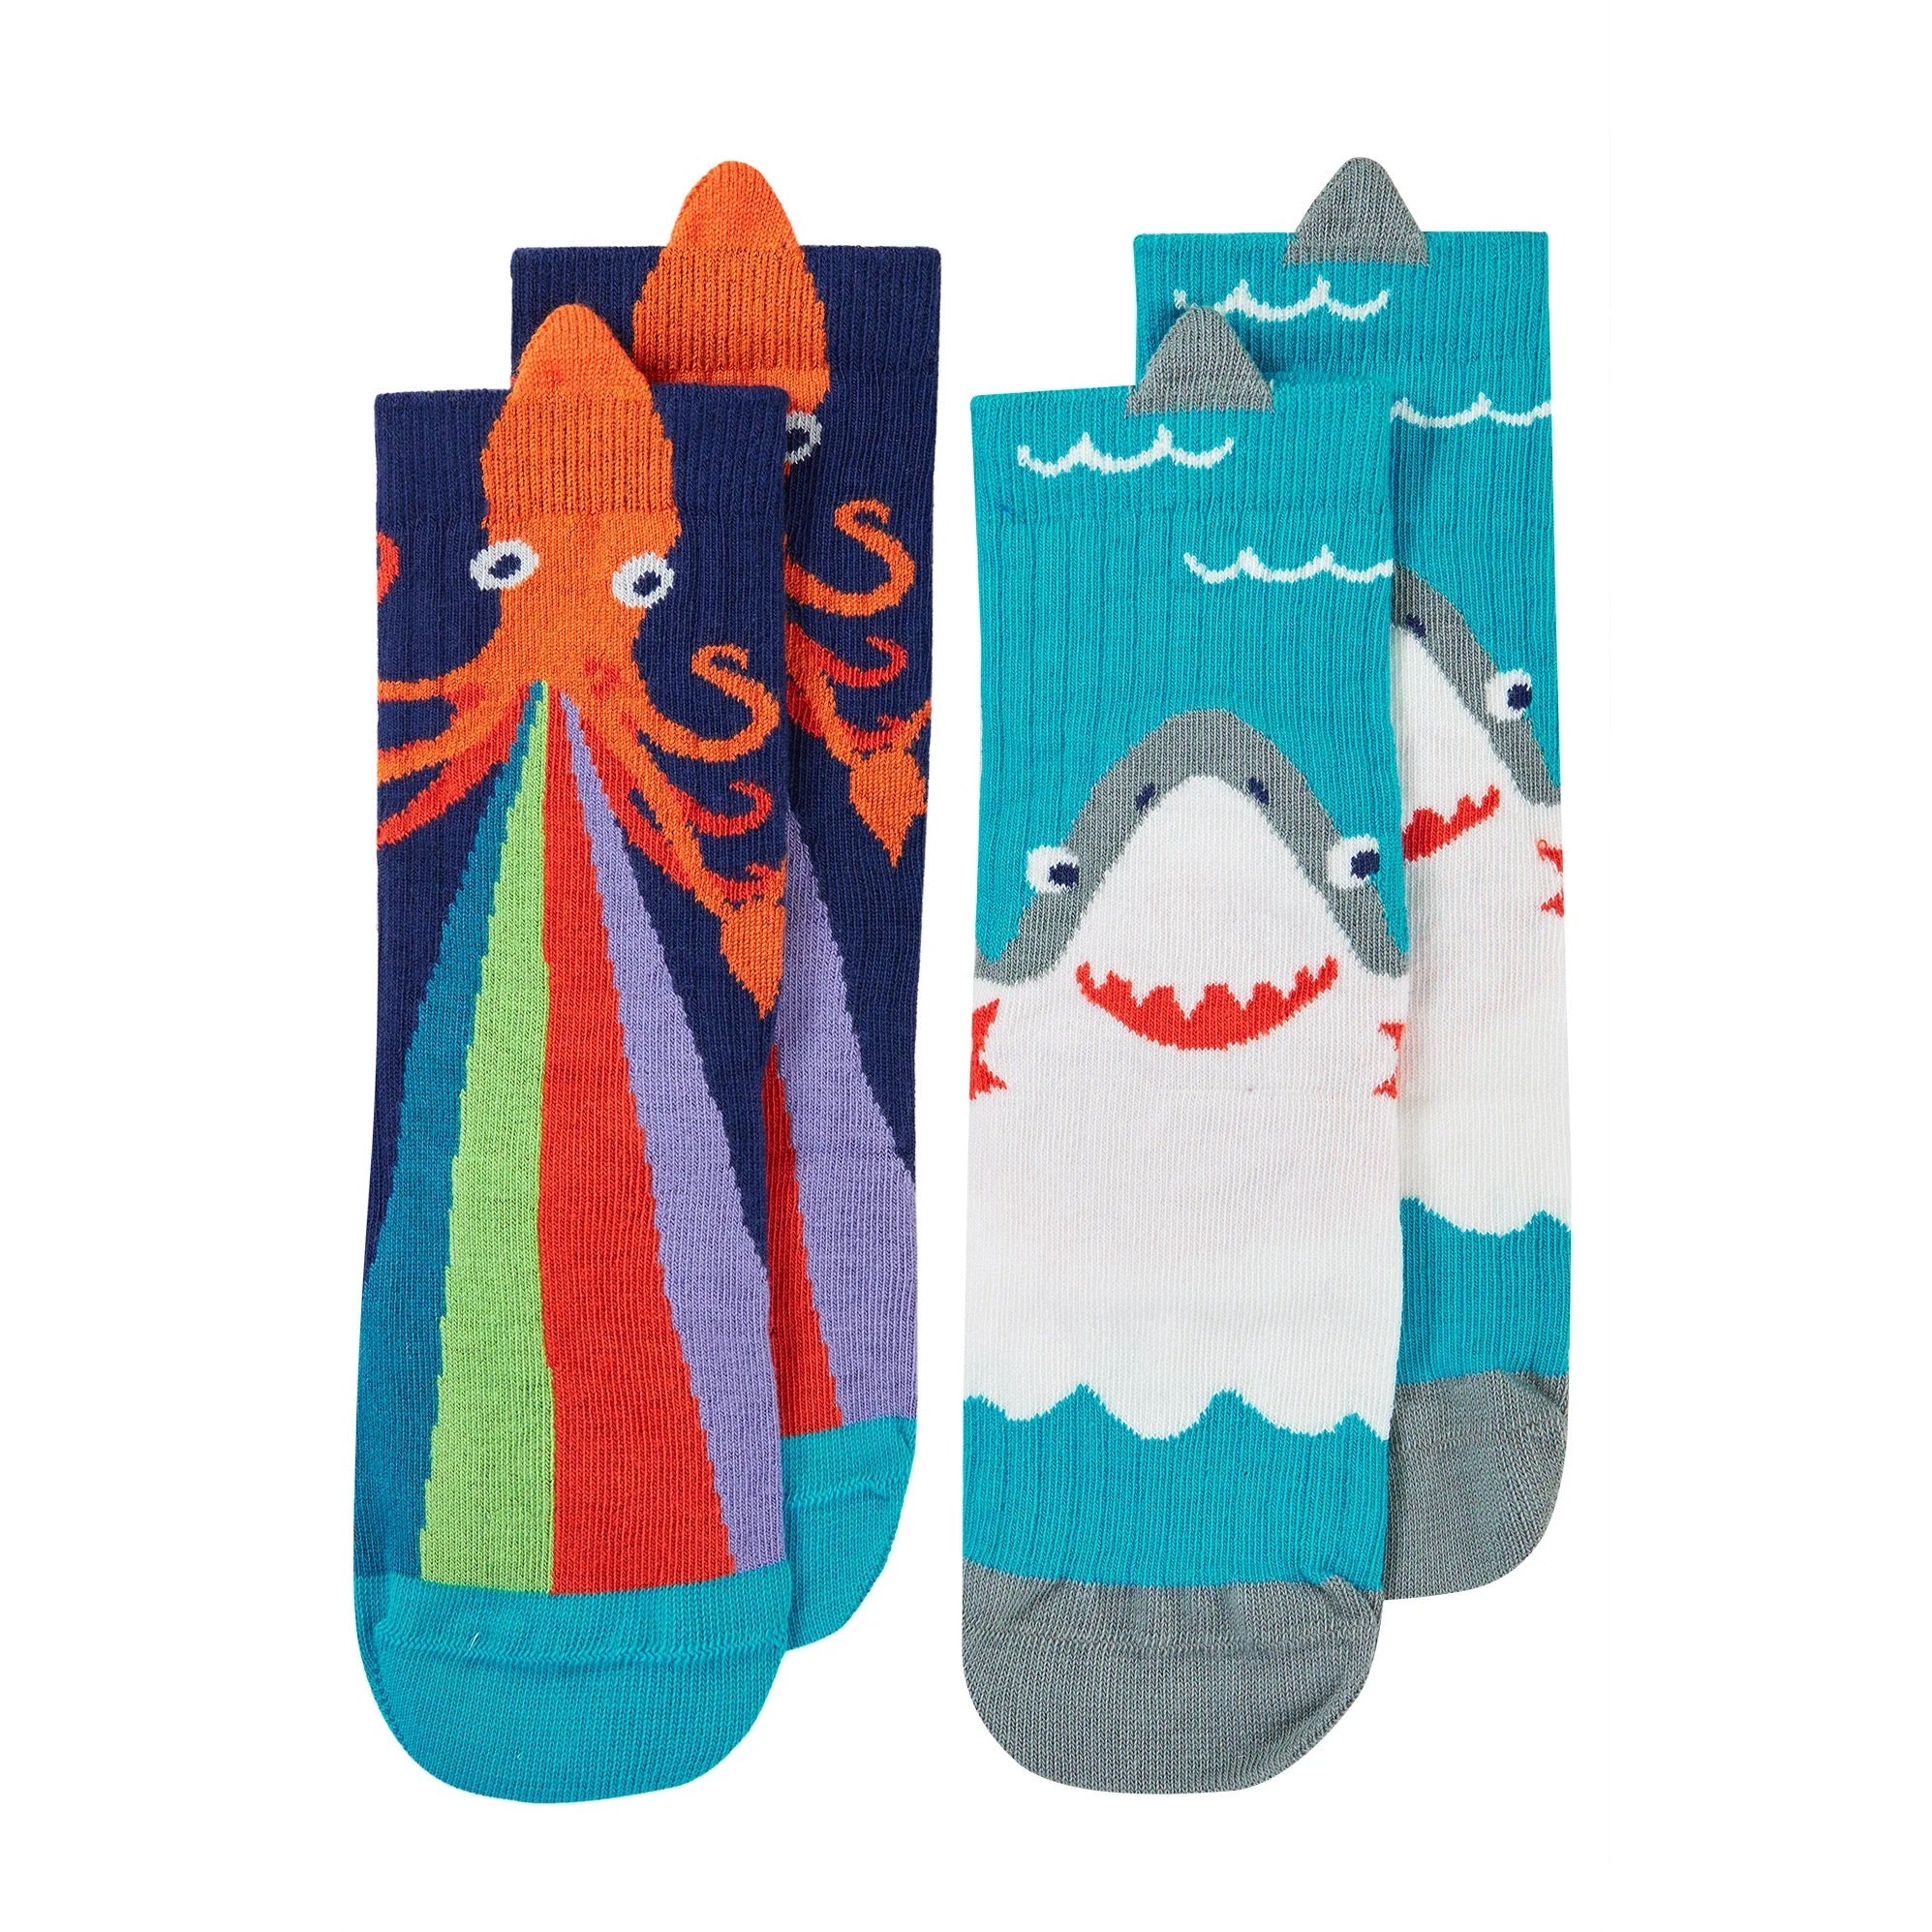 Frugi 2 Pack Character Socks Pn5bk Shark Squid Clothing UK6-8 / Multi,UK9-12 / Multi,UK13-2 / Multi